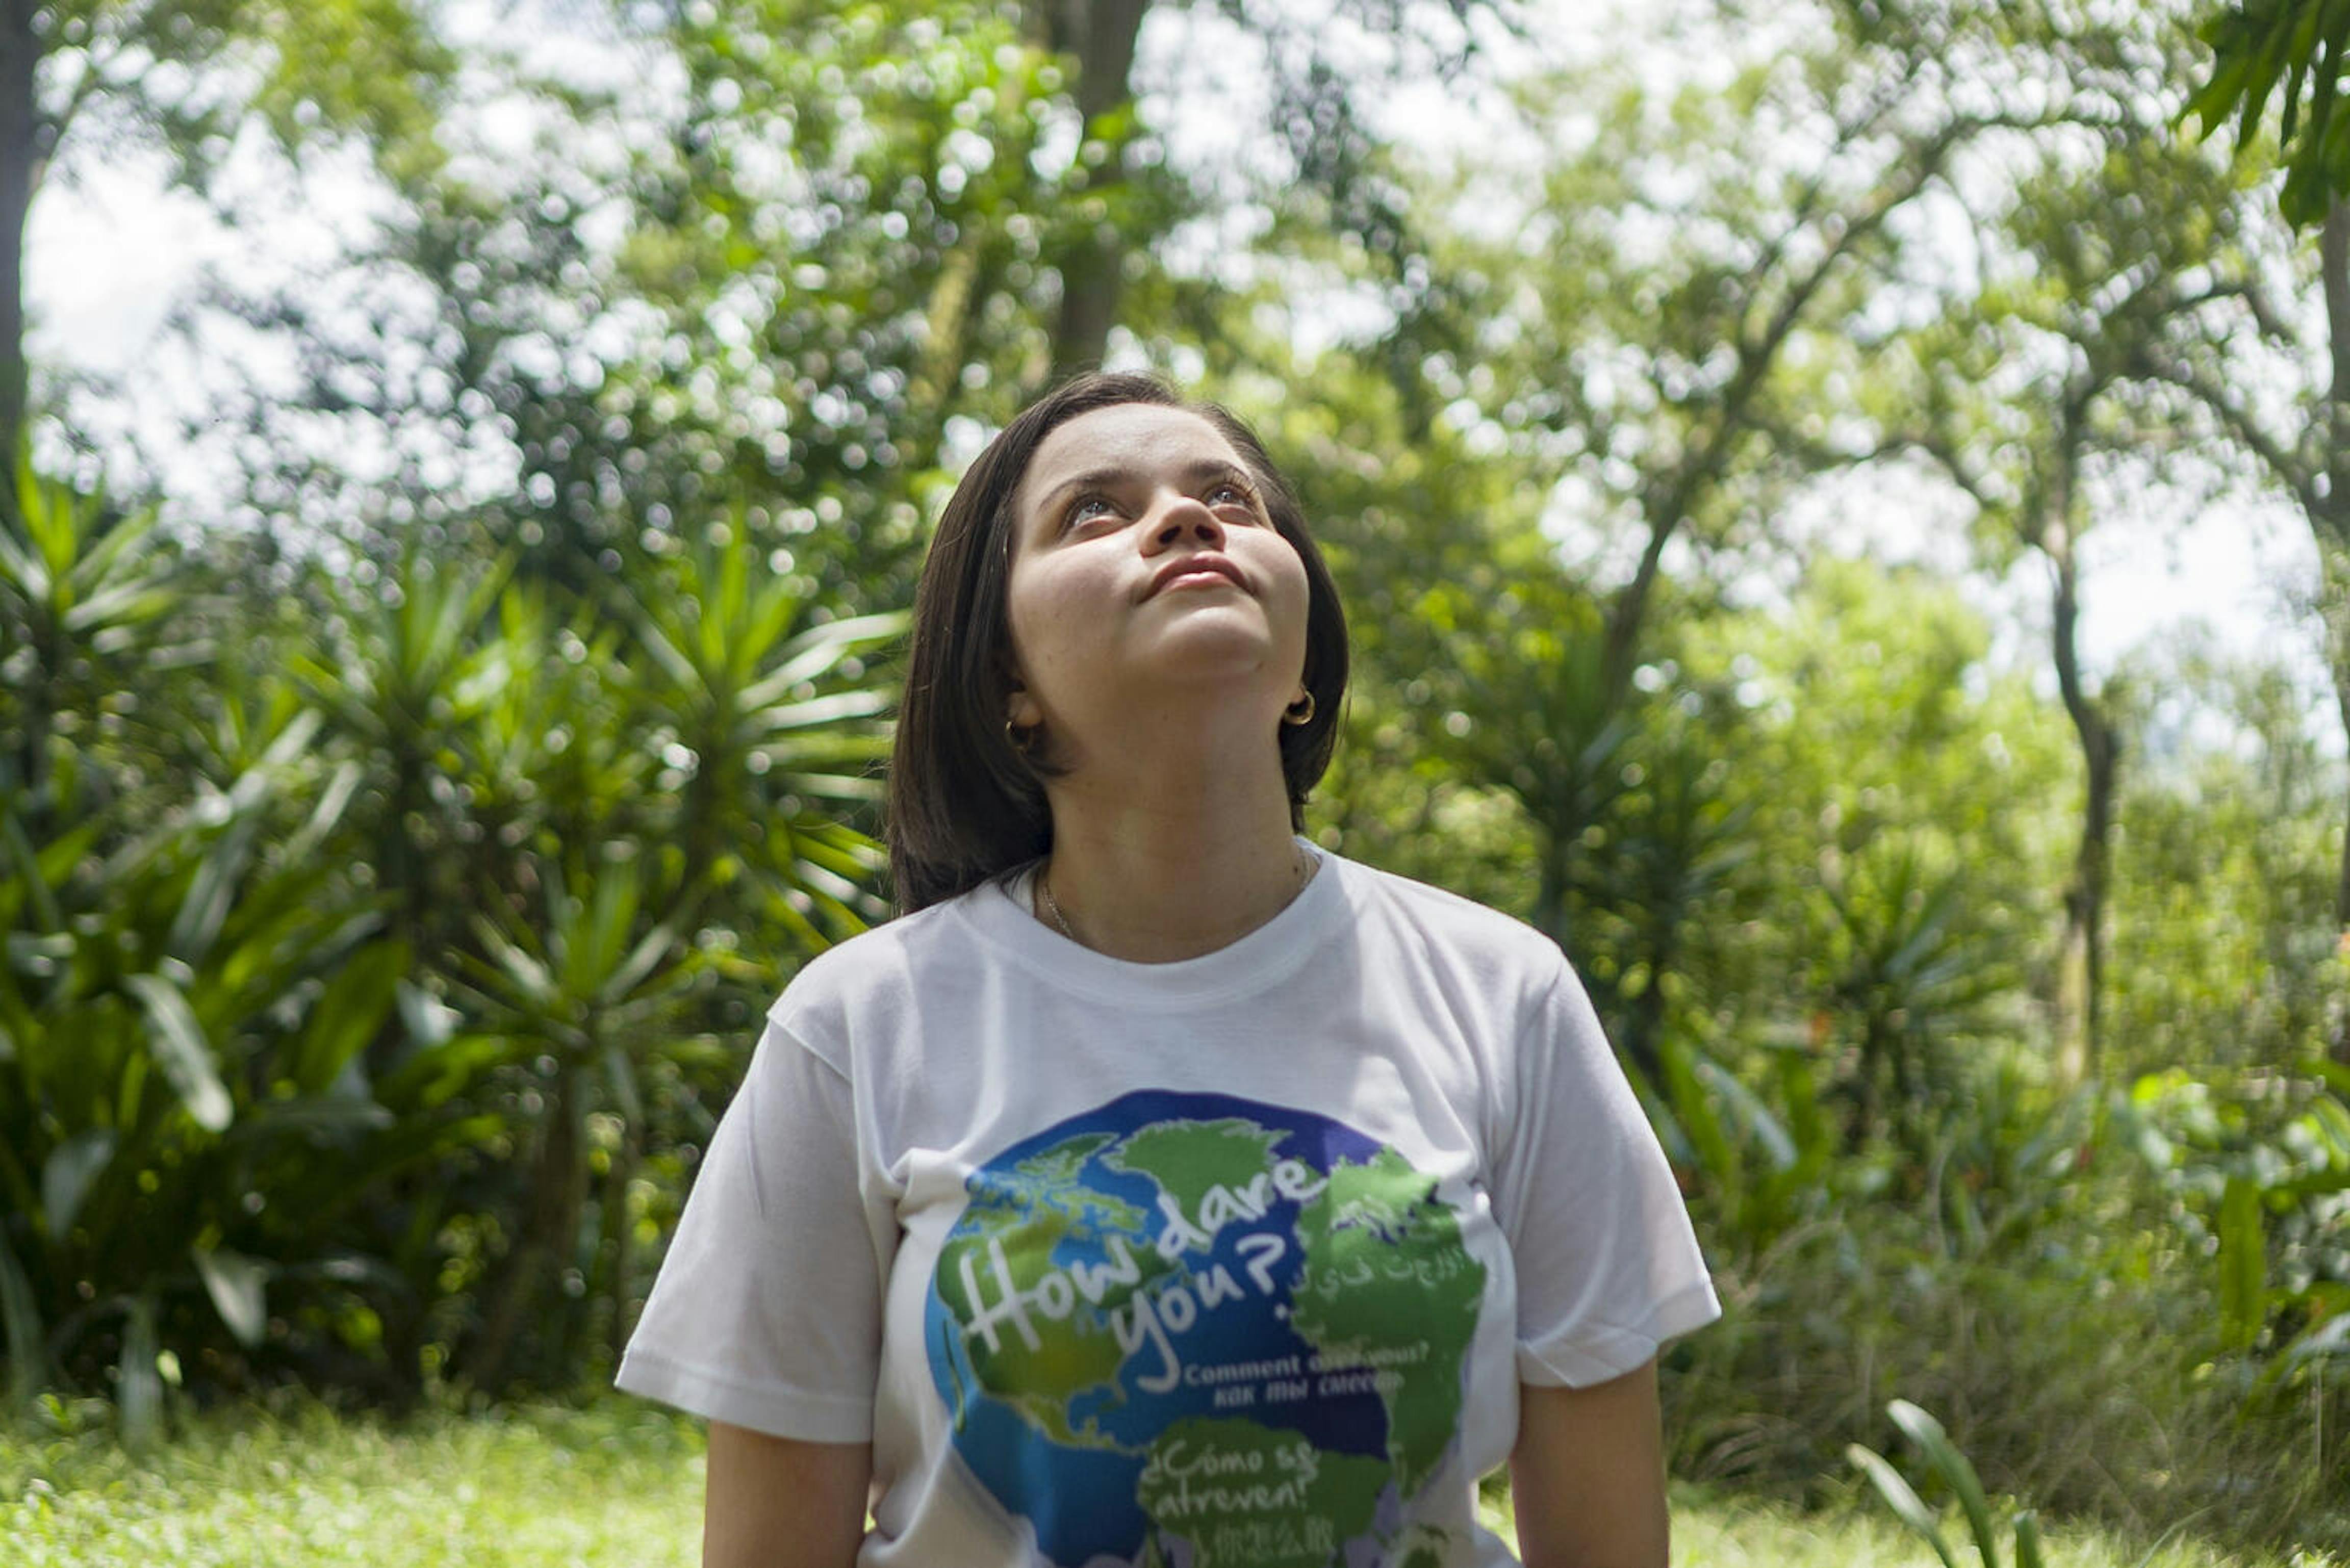 Kyara Cascante, giovane adolescente della Costa Rica, racconta della sua lotta per preservare l'ambiente